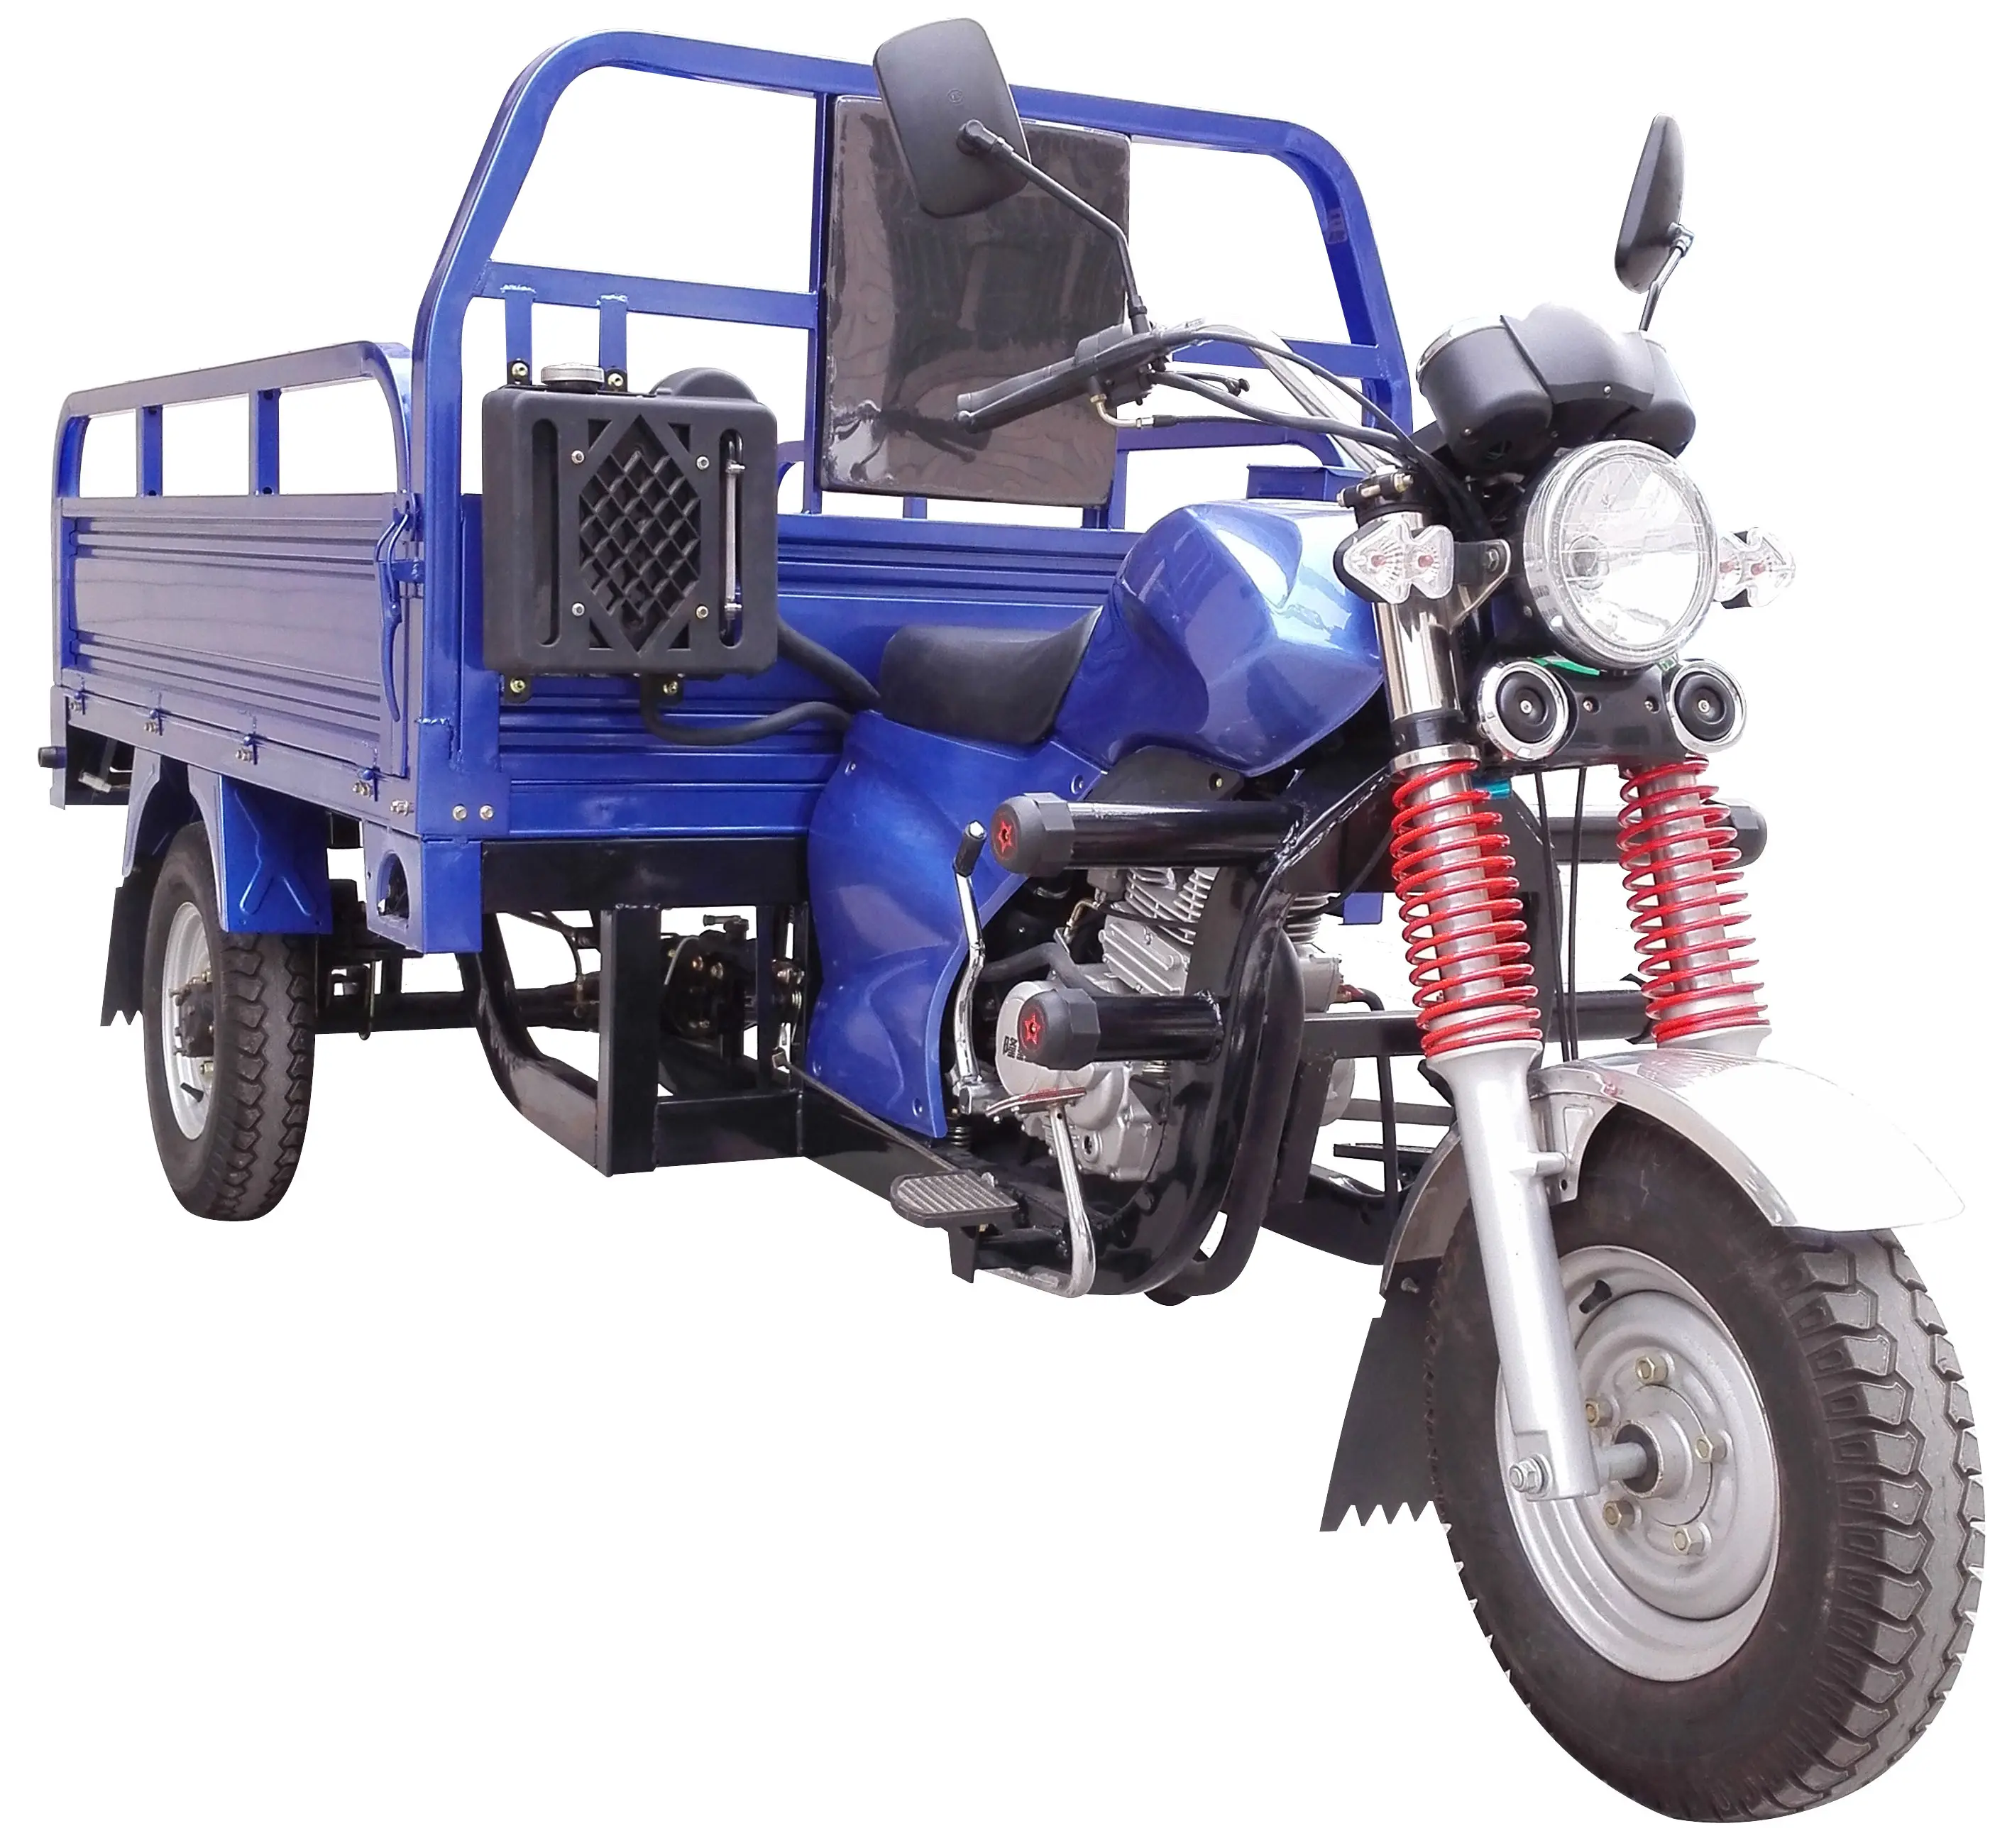 Sepeda motor roda tiga, sepeda motor penggerak roda tiga pertanian kereta dorong roda tiga